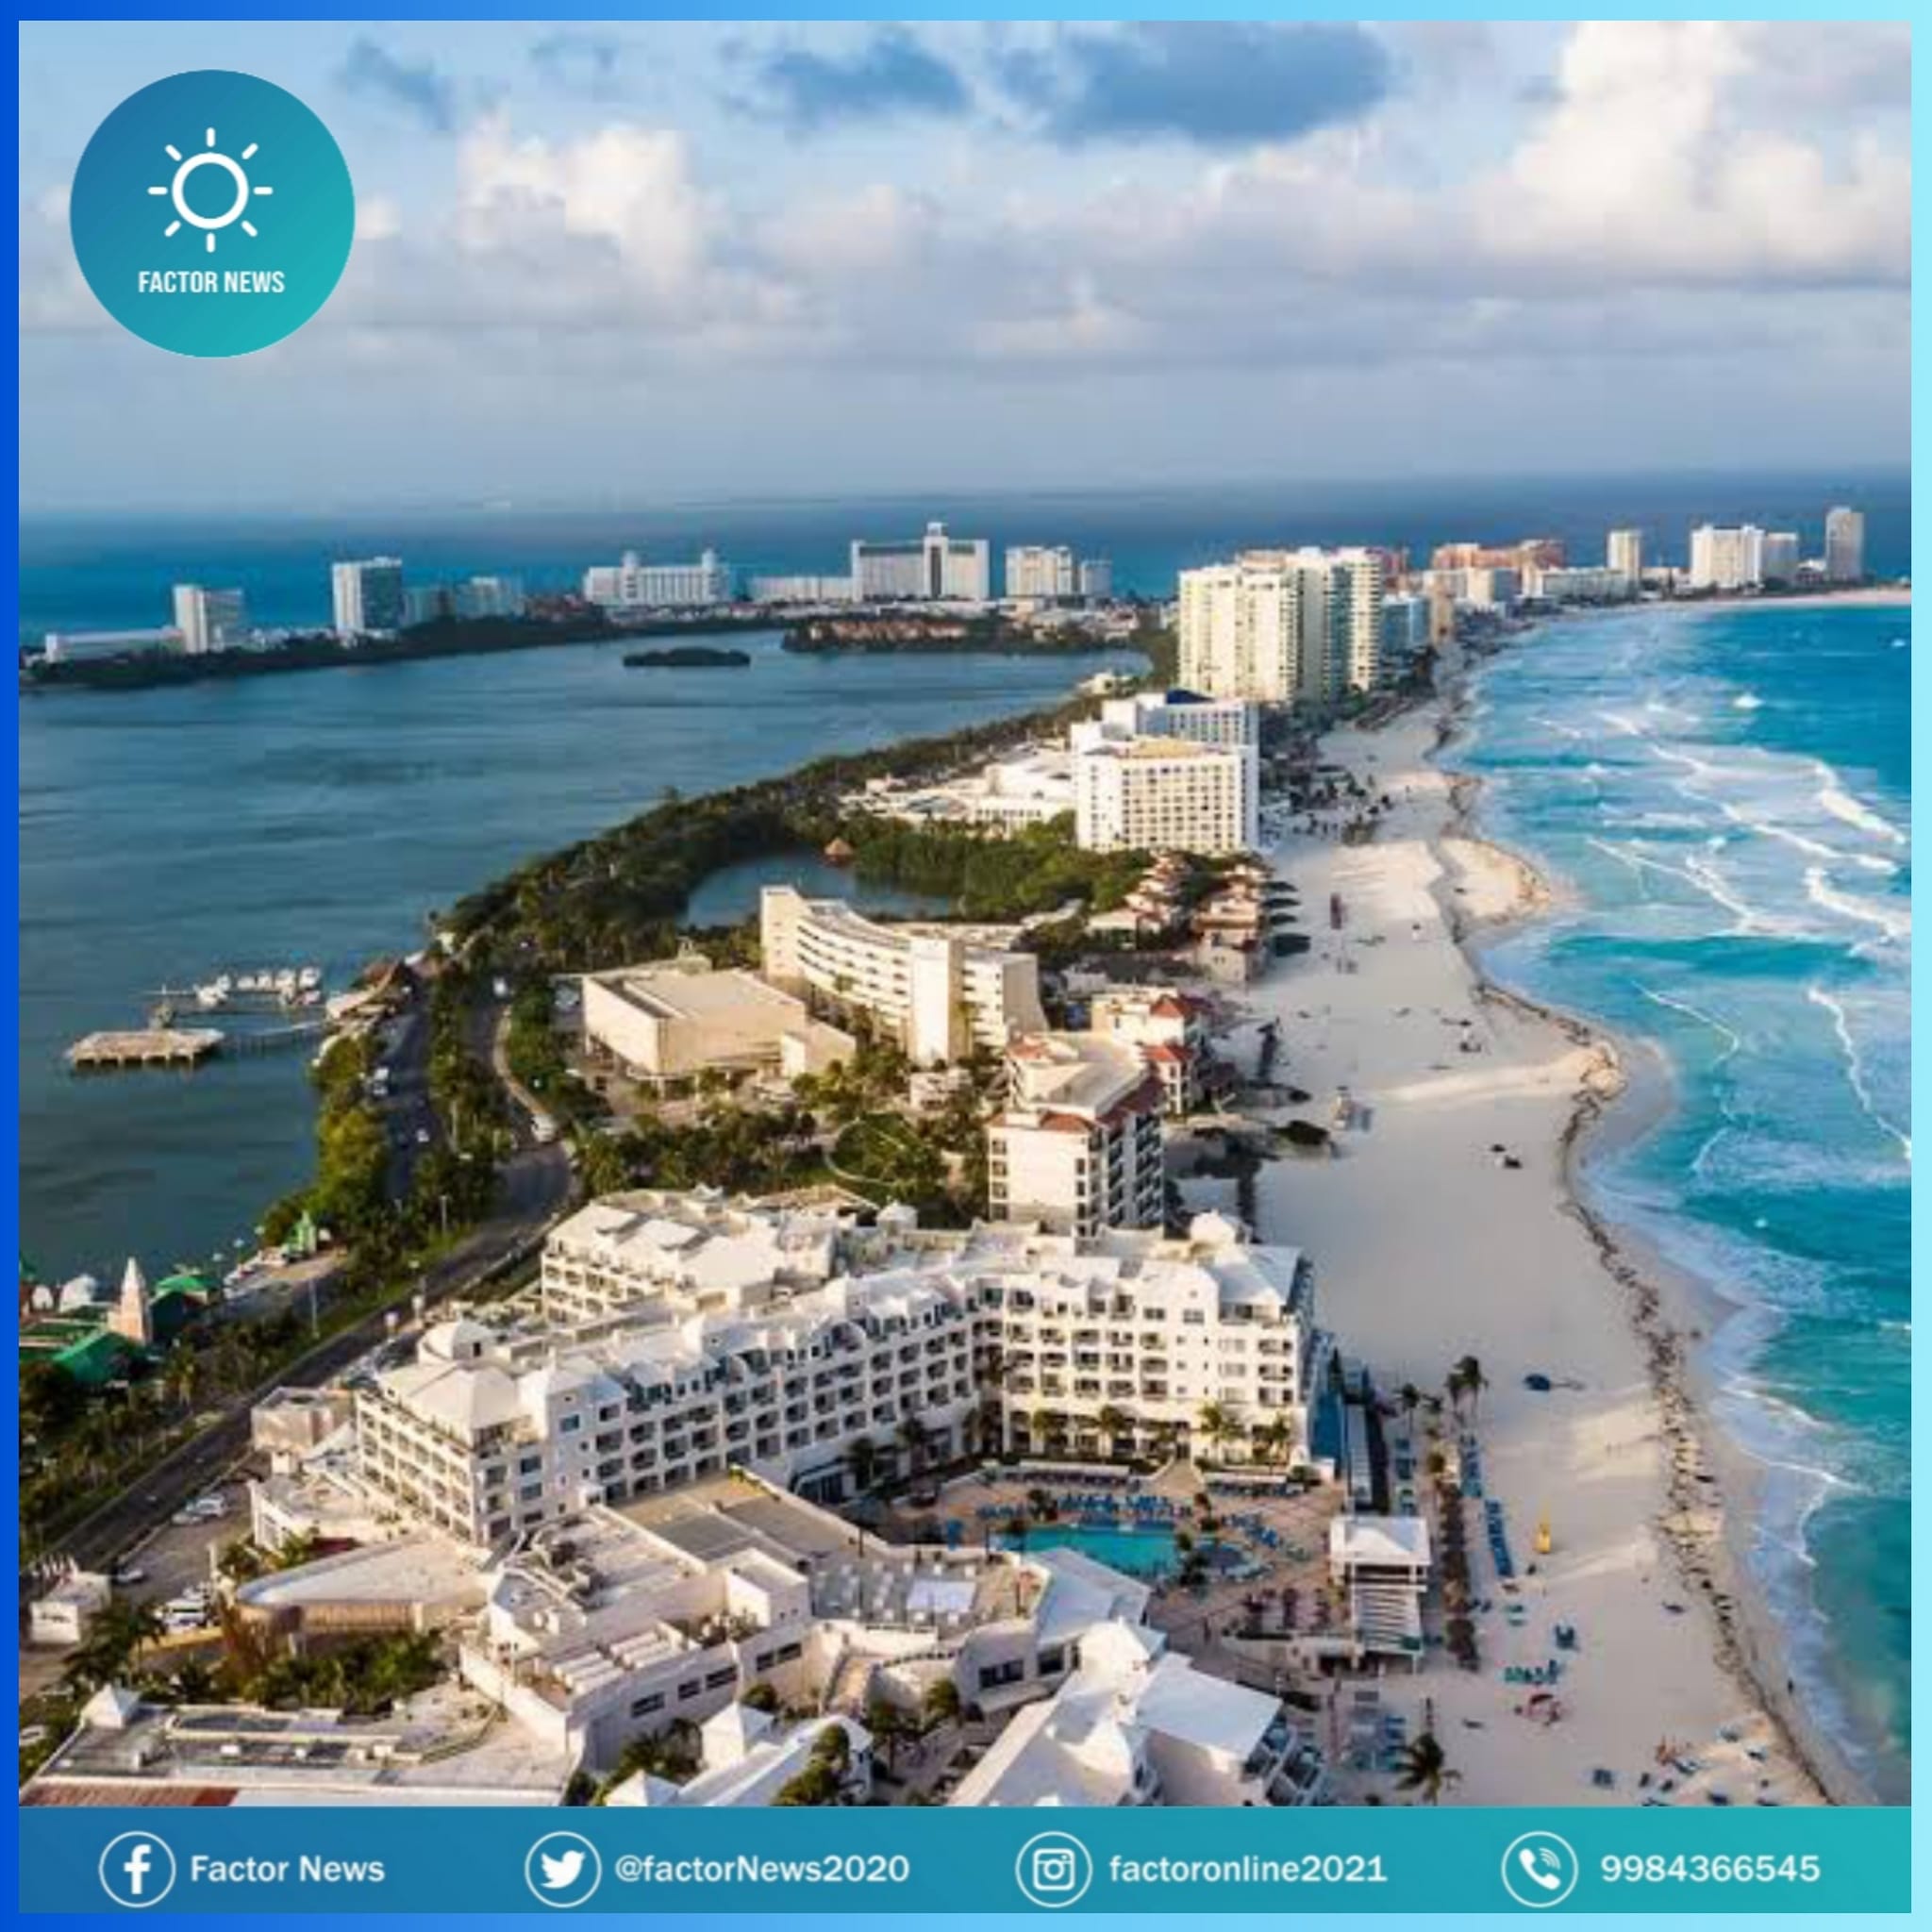 Hoteleros de Cancún aseguran estar listos con sus refugios para hacer frente a la temporada de huracanes.